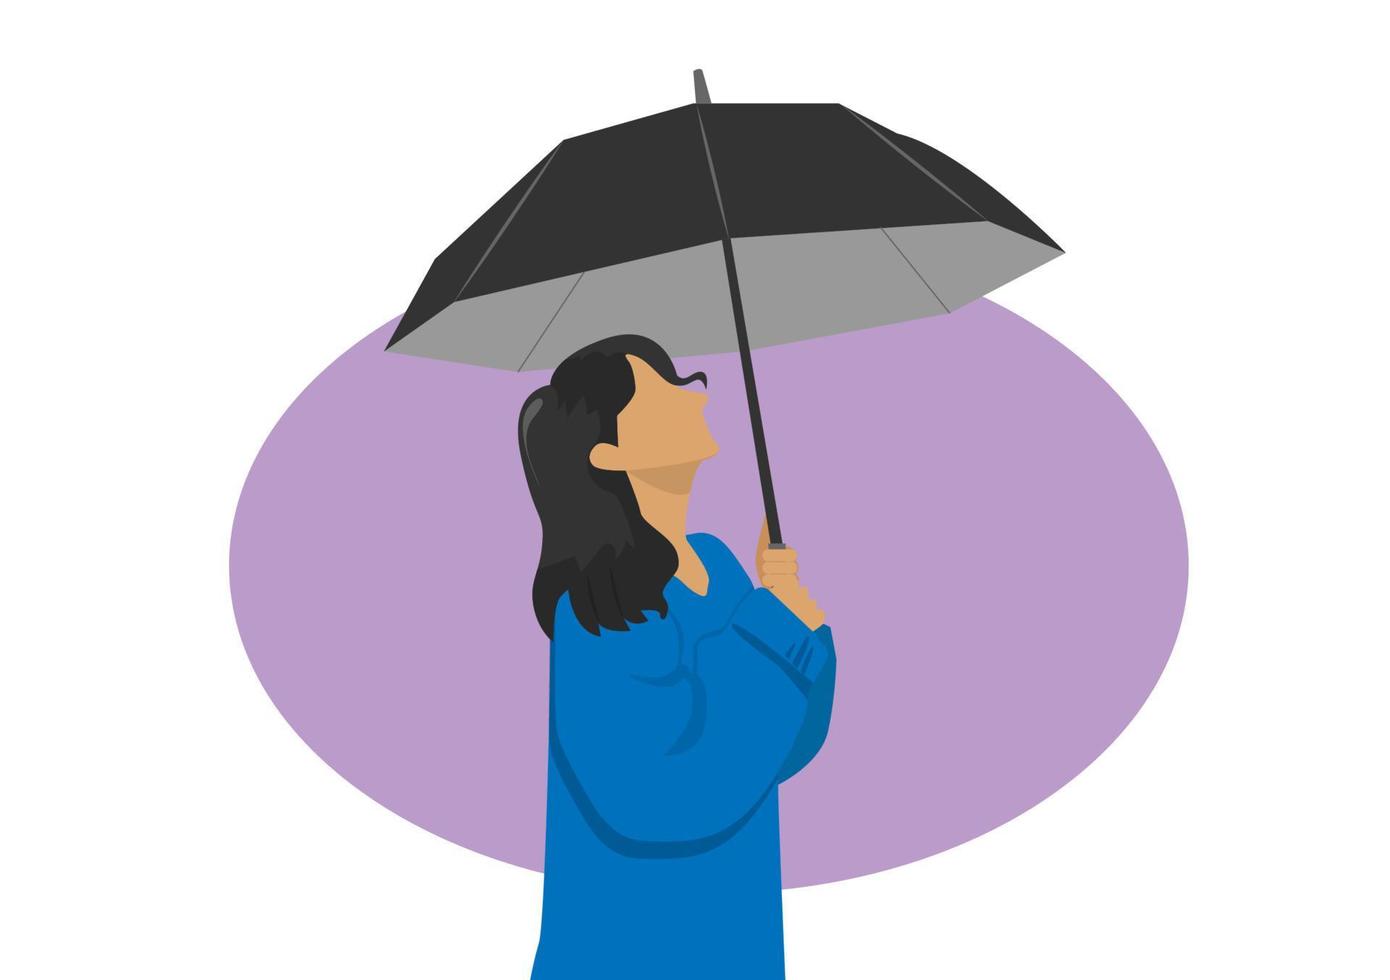 seriefigur kvinna som håller svart paraply hon ser ledsen ut platt design koncept element vektor illustration av säsongsbetonade symboler